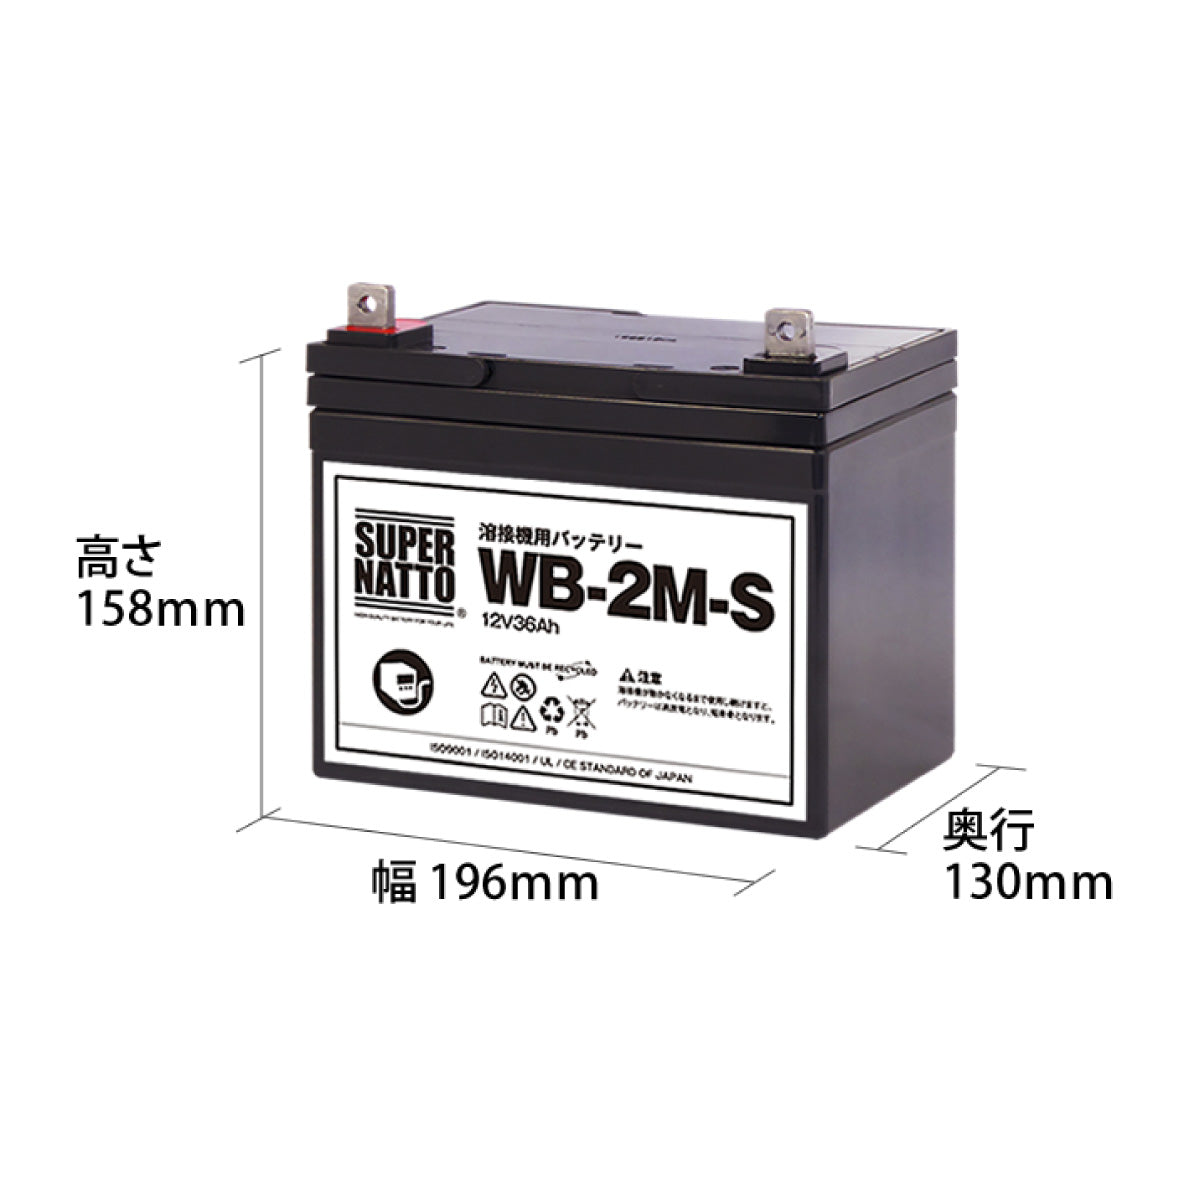 スーパーナット WB-2M-S 溶接機用バッテリー 3個セット – バッテリー